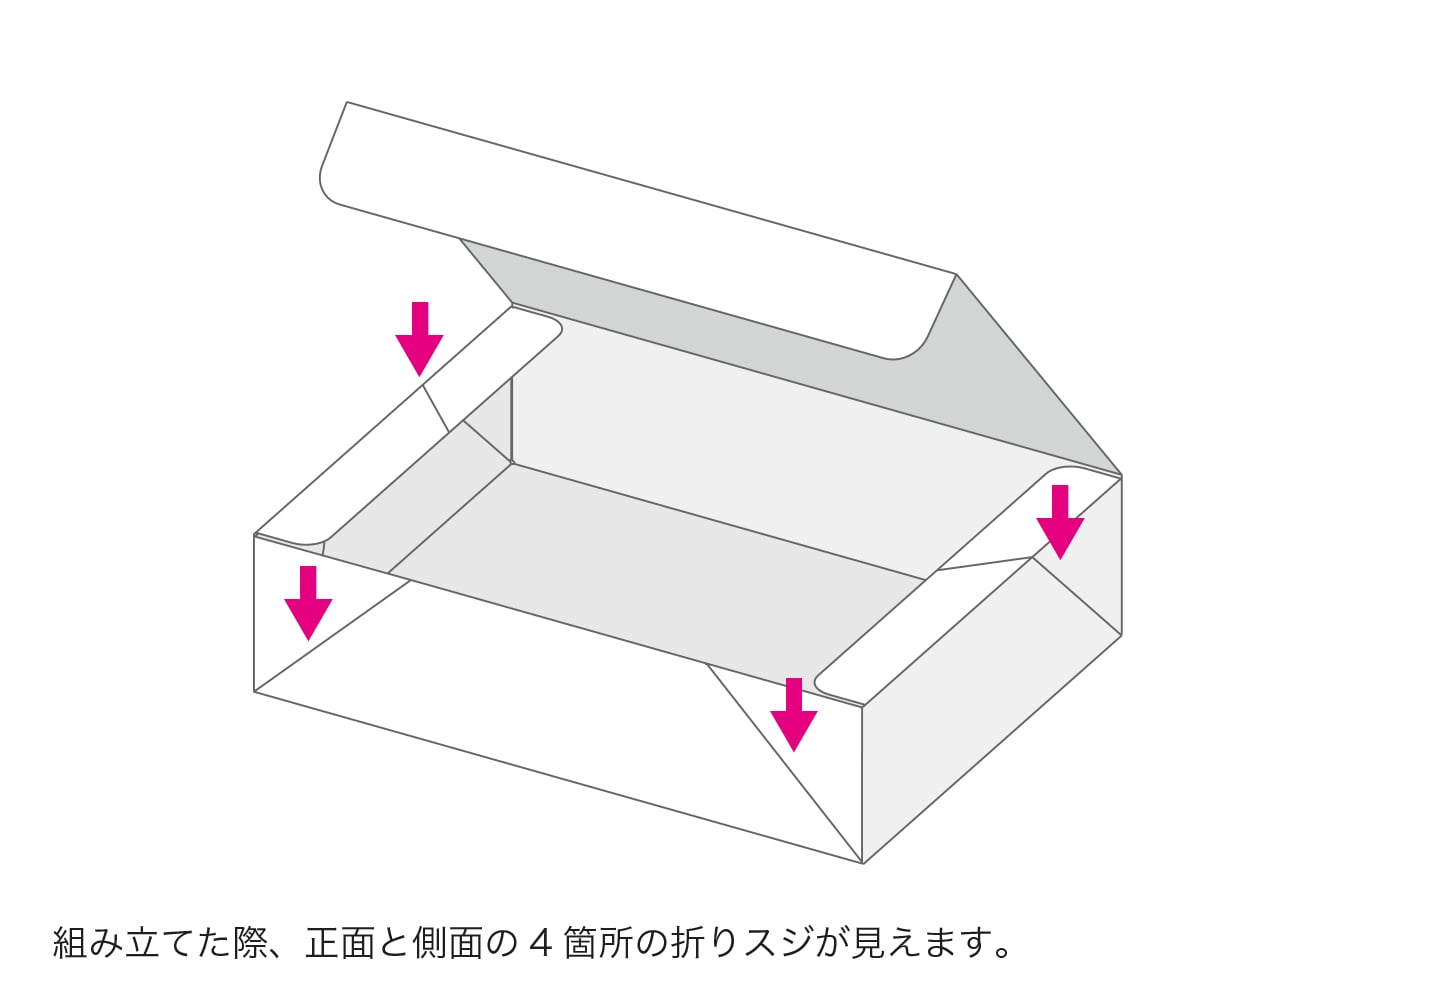 組み立てた際、正面と側面の4箇所の折りスジが見えます。